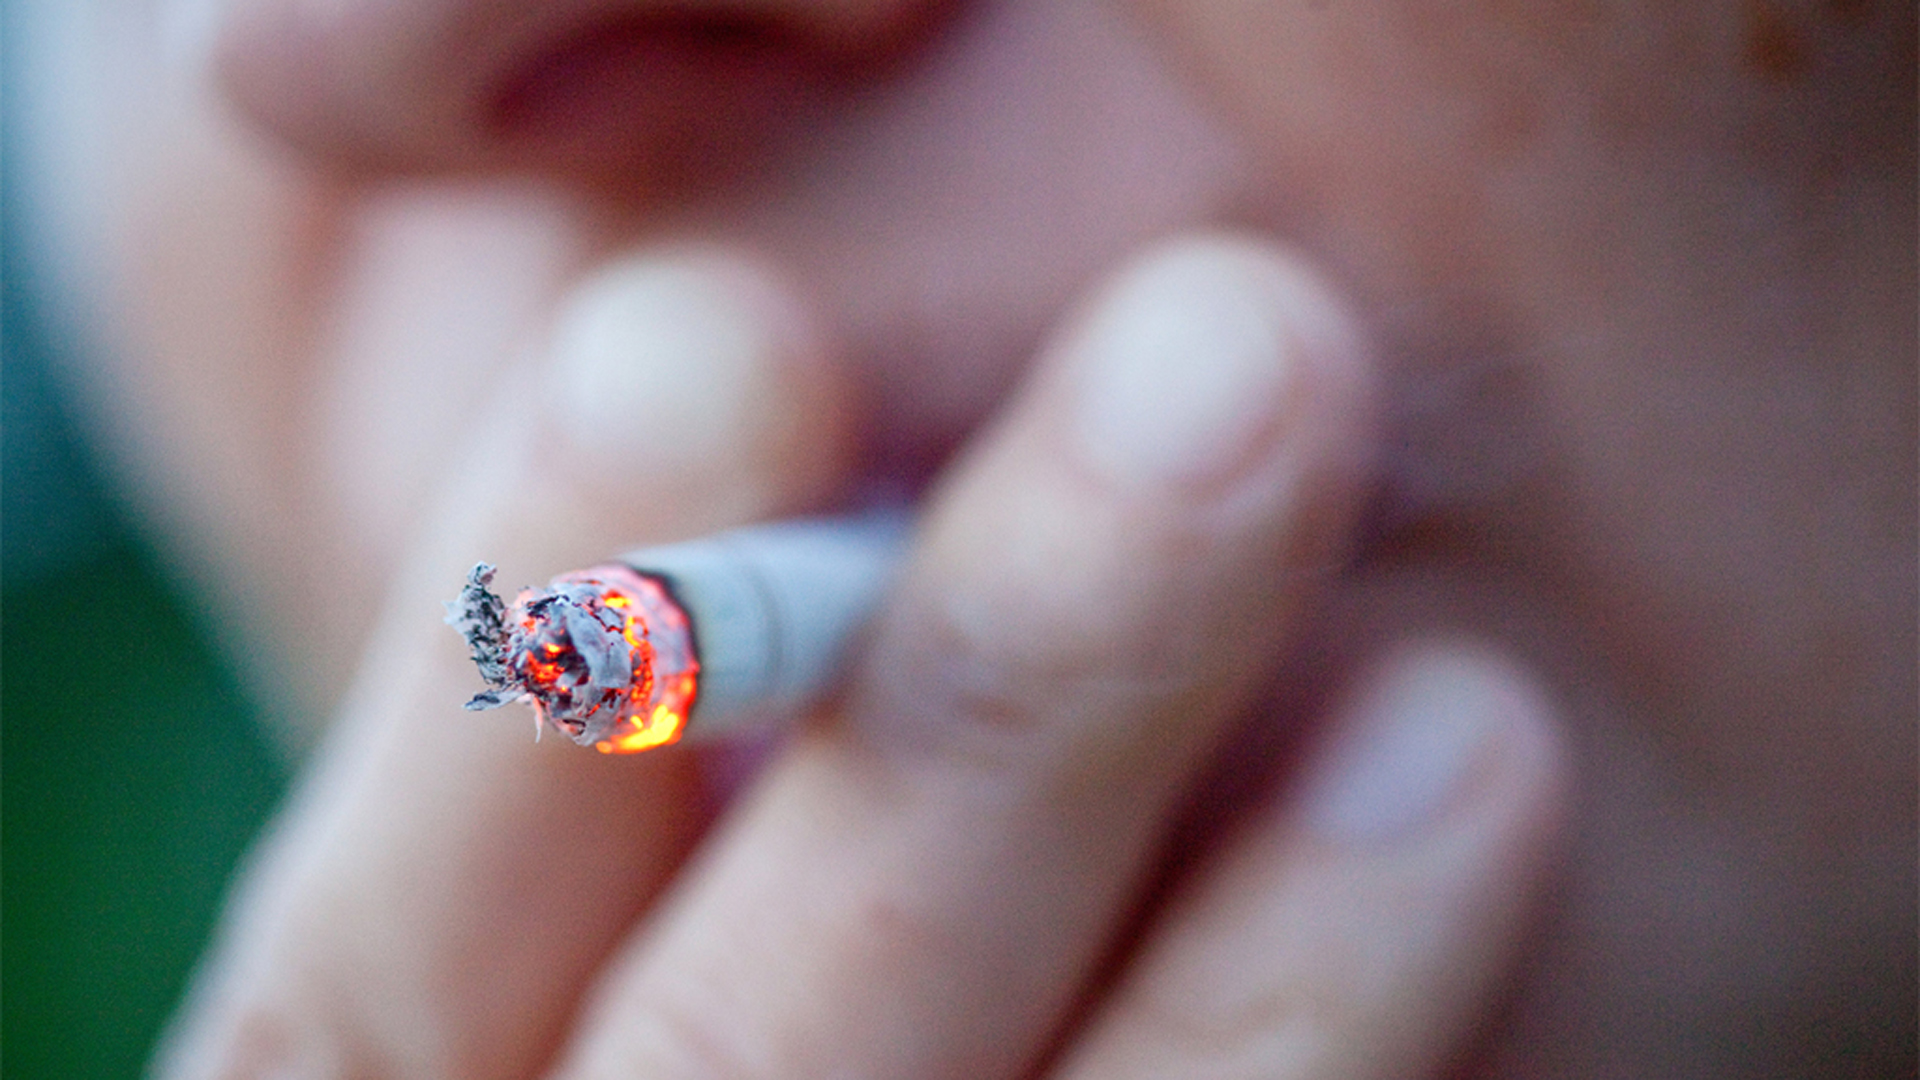 Silhouette eines Rauchers, der sich eine Zigarette anzündet.